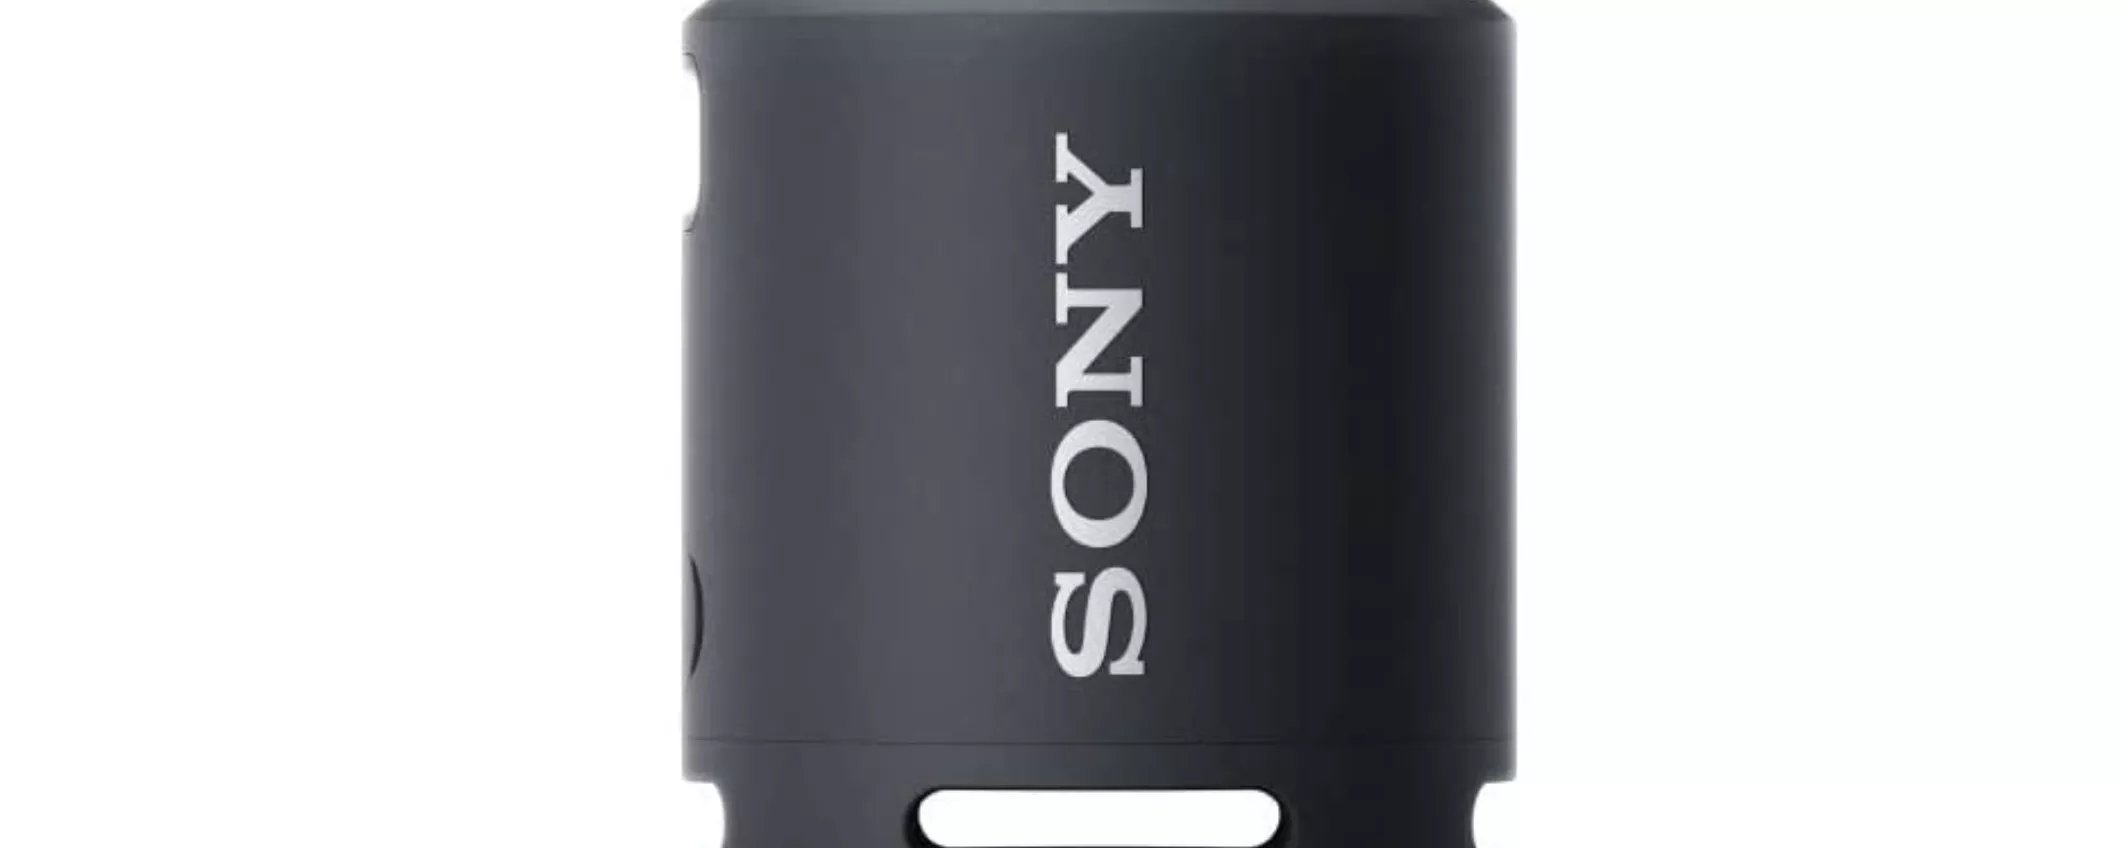 Altoparlante Sony con tecnologia EXTRA BASS ad un prezzo FOLLE su Amazon